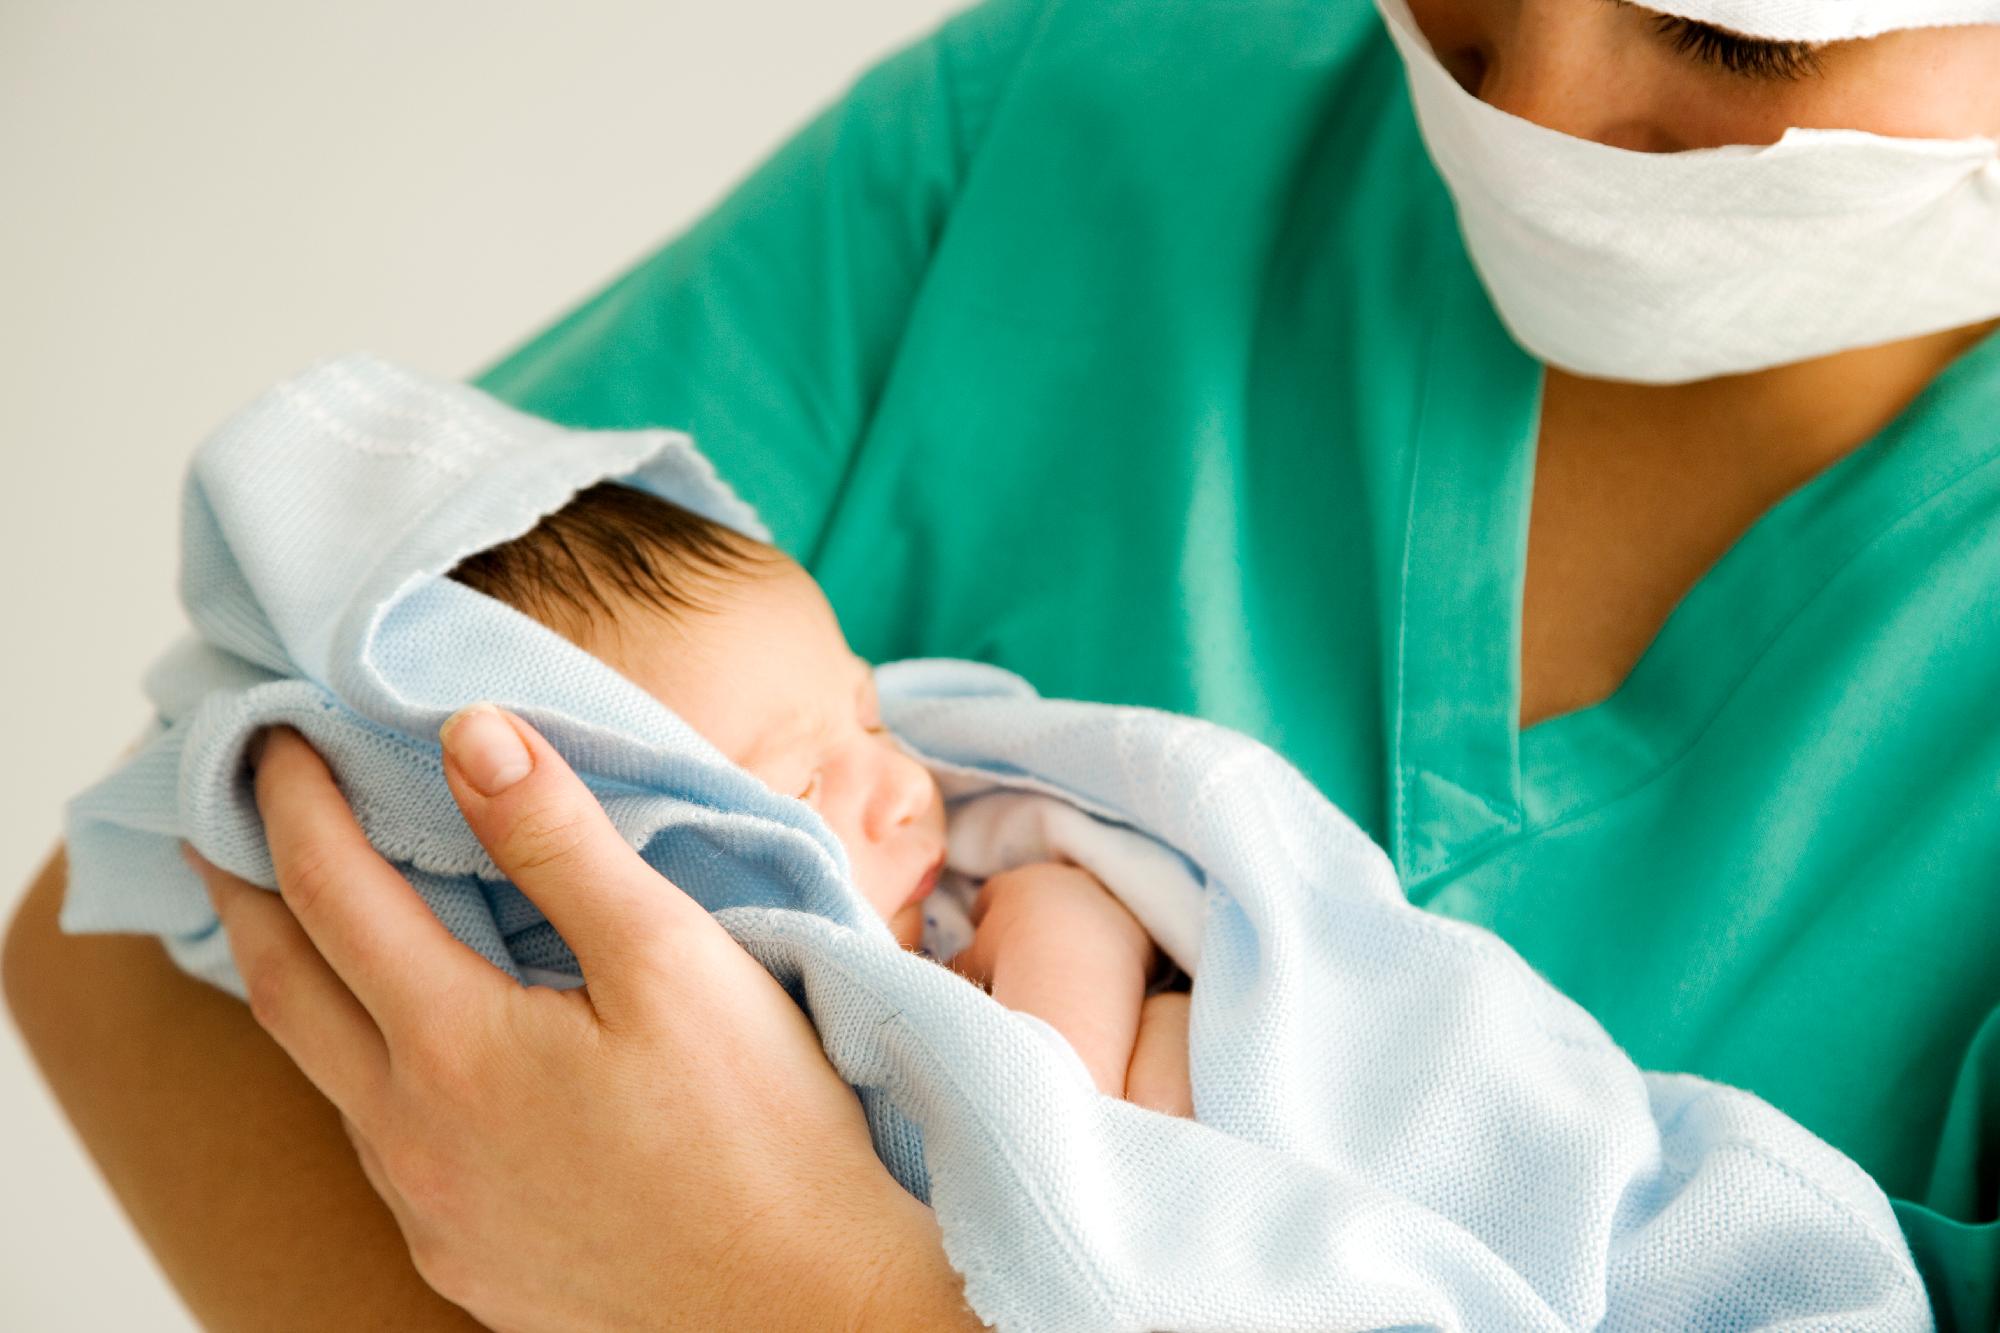 Újszülöttek ápolási kézikönyve címmel új tankönyv jelent meg